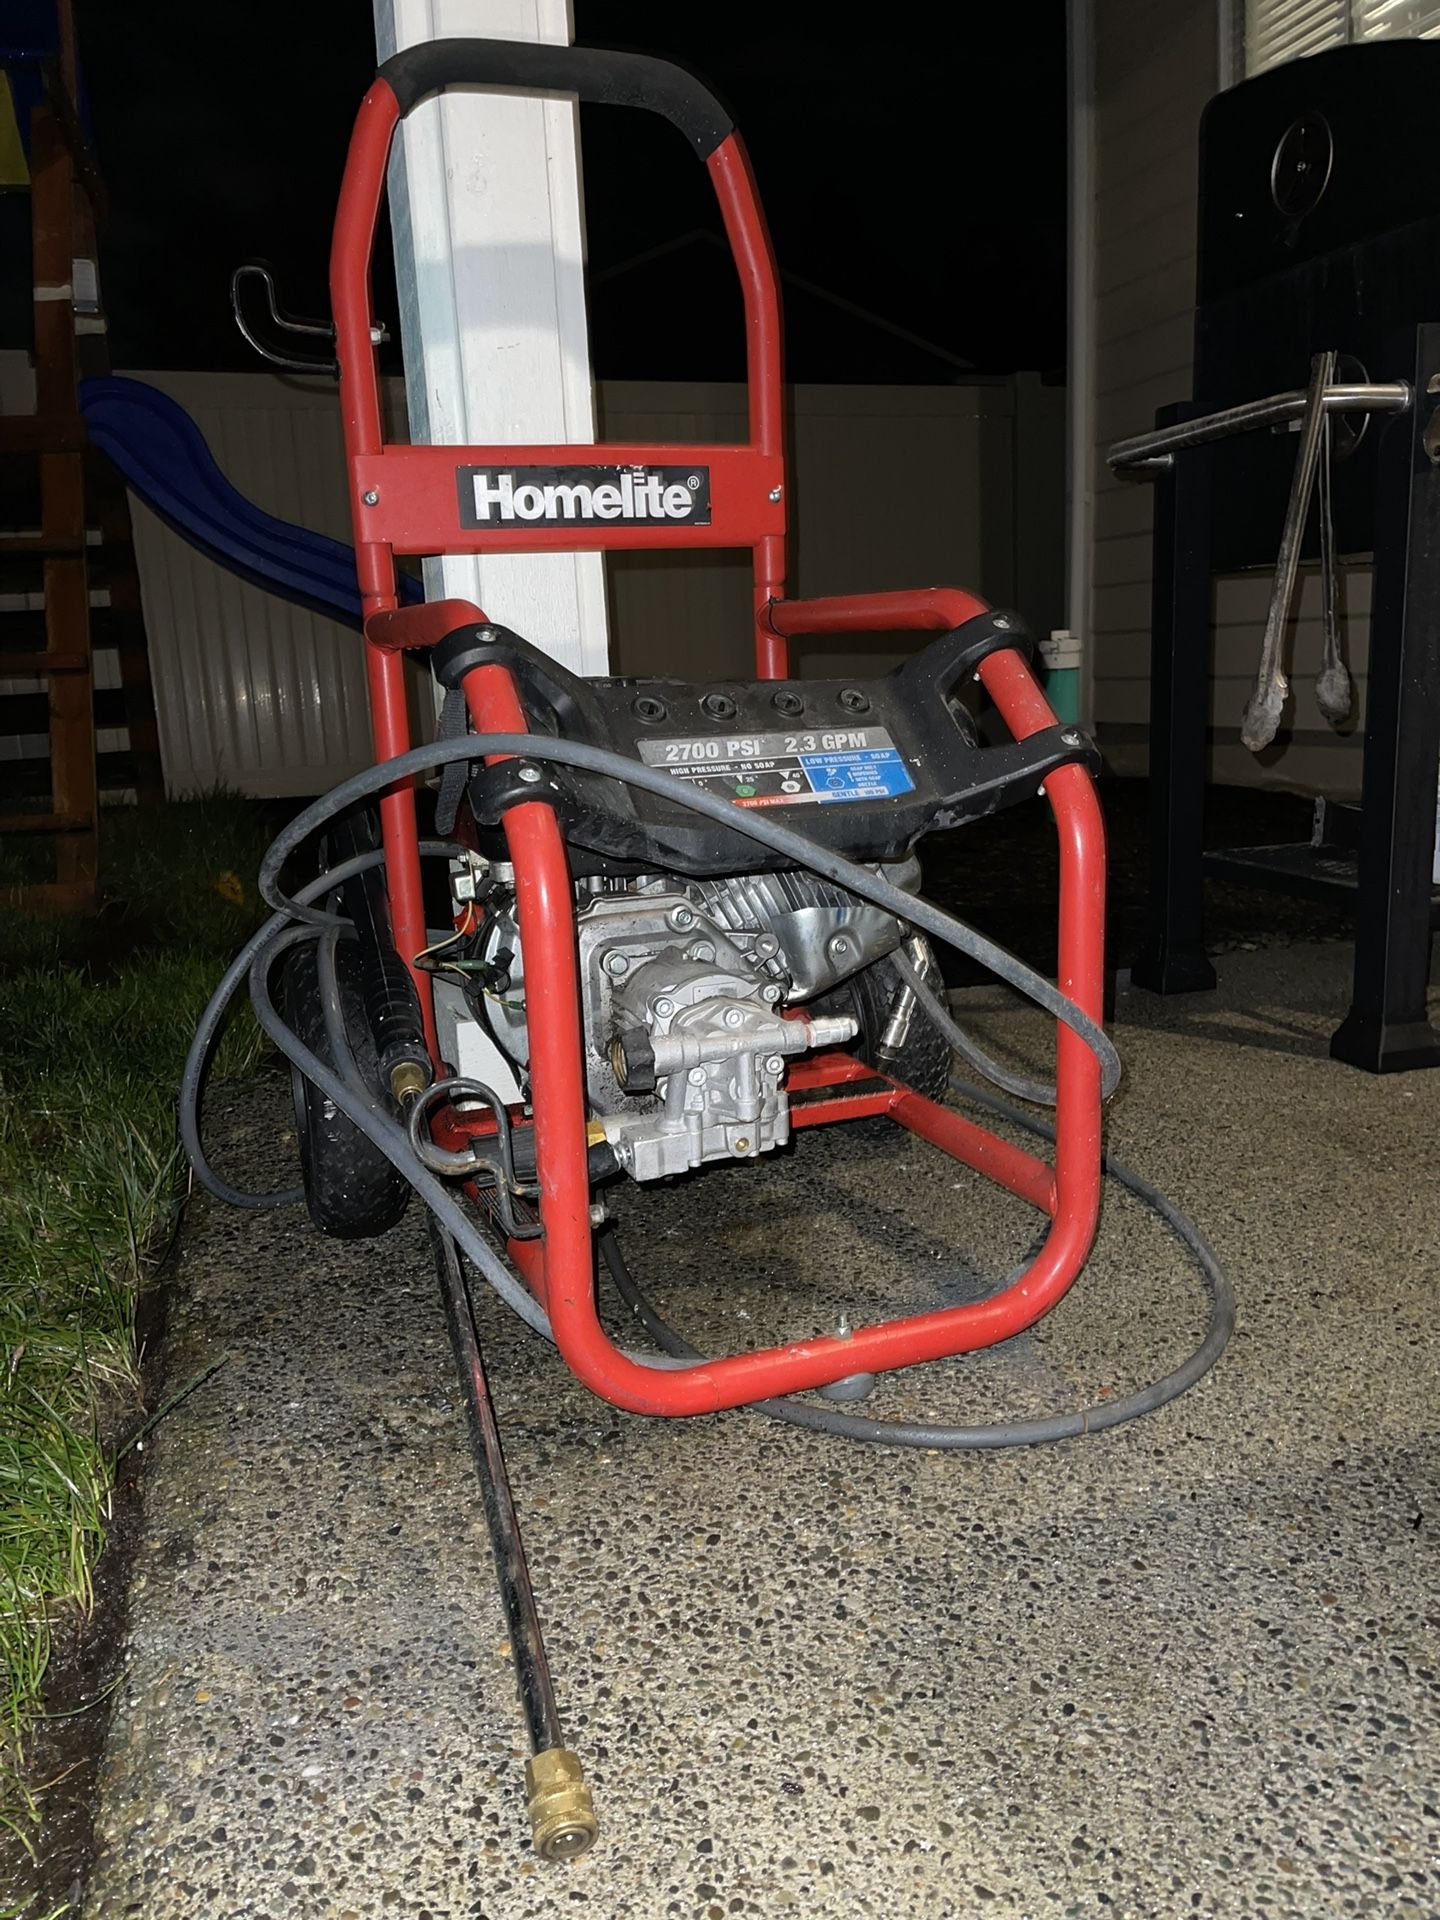 Homelite 2700 Psi Pressure Washer (NO Start) $60